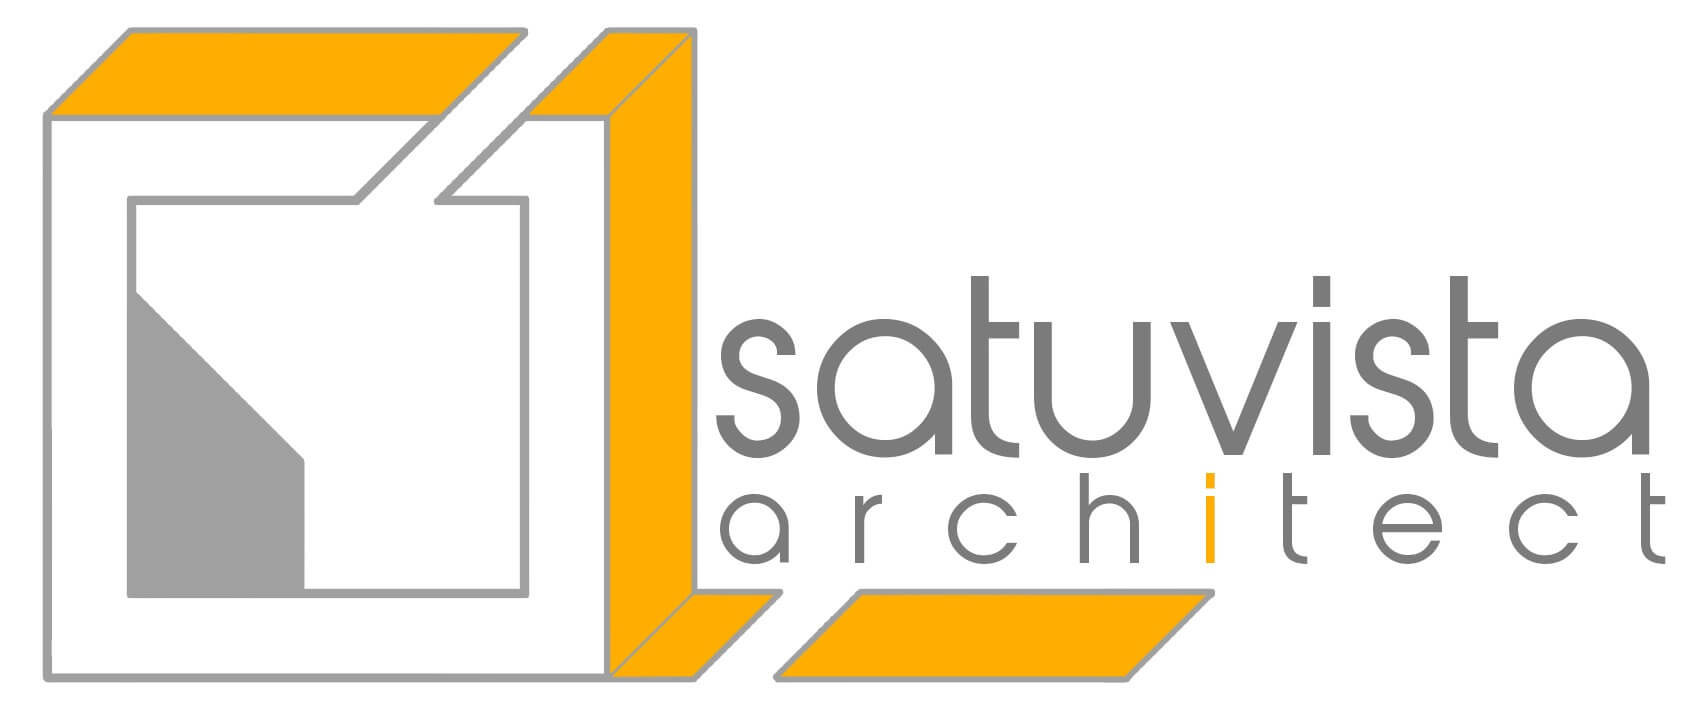 SatuVista Architect